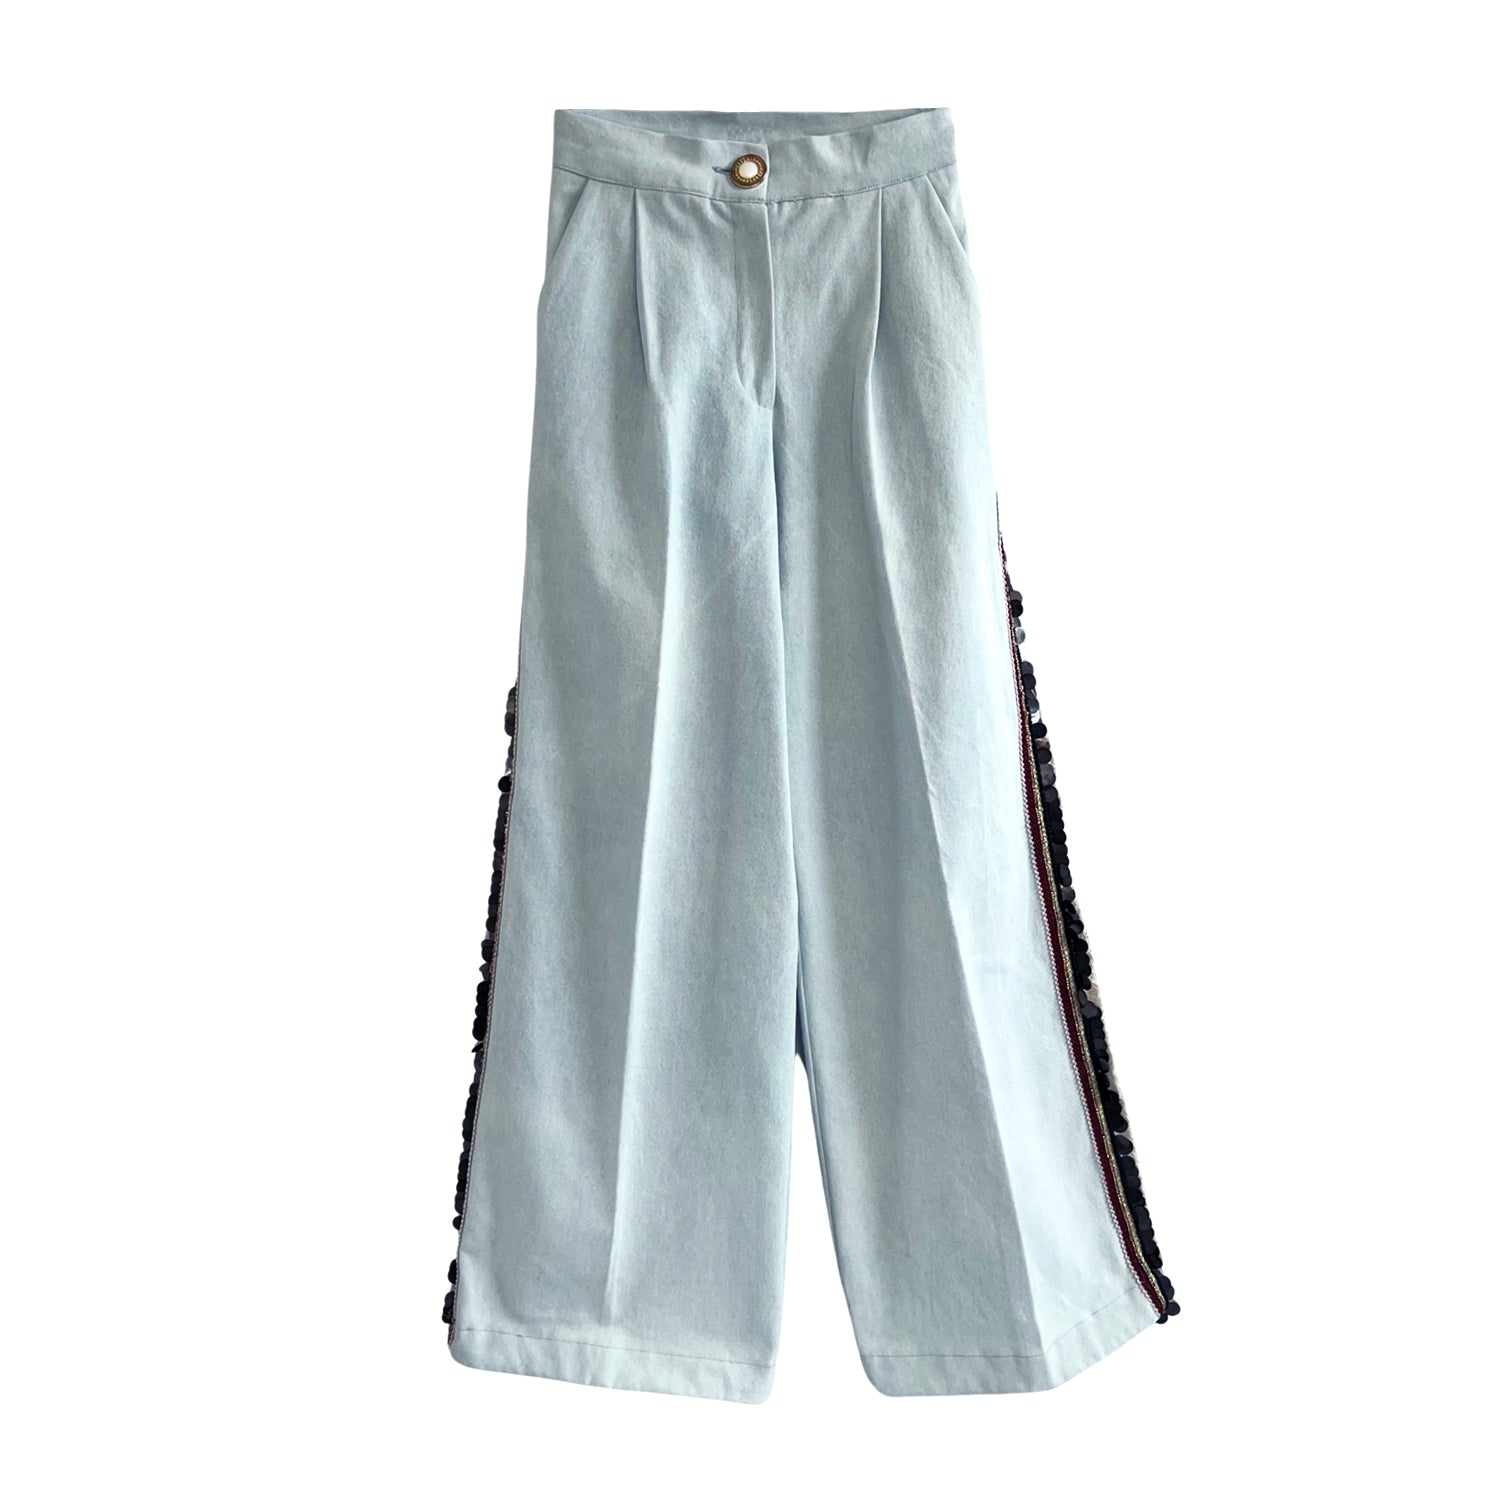 Embellished Wide-Leg Pants in Washed Blue Denim